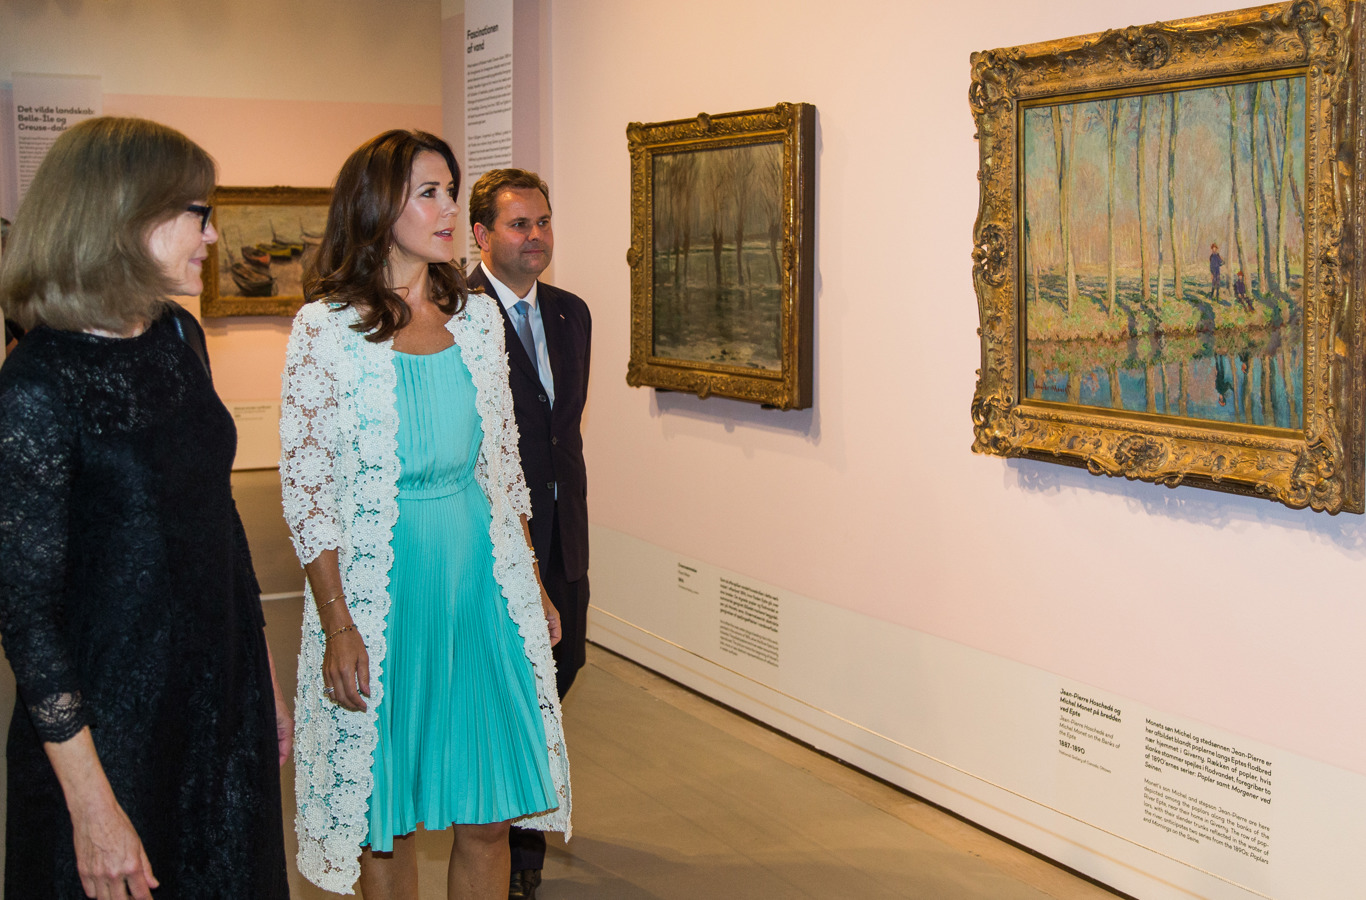 Kronprinsessen blev vist rundt i udstillingen af museumsdirektør Anne-Birgitte Fonsmark sammen med Mads Lebech, adm. direktør i Industriens Fond.